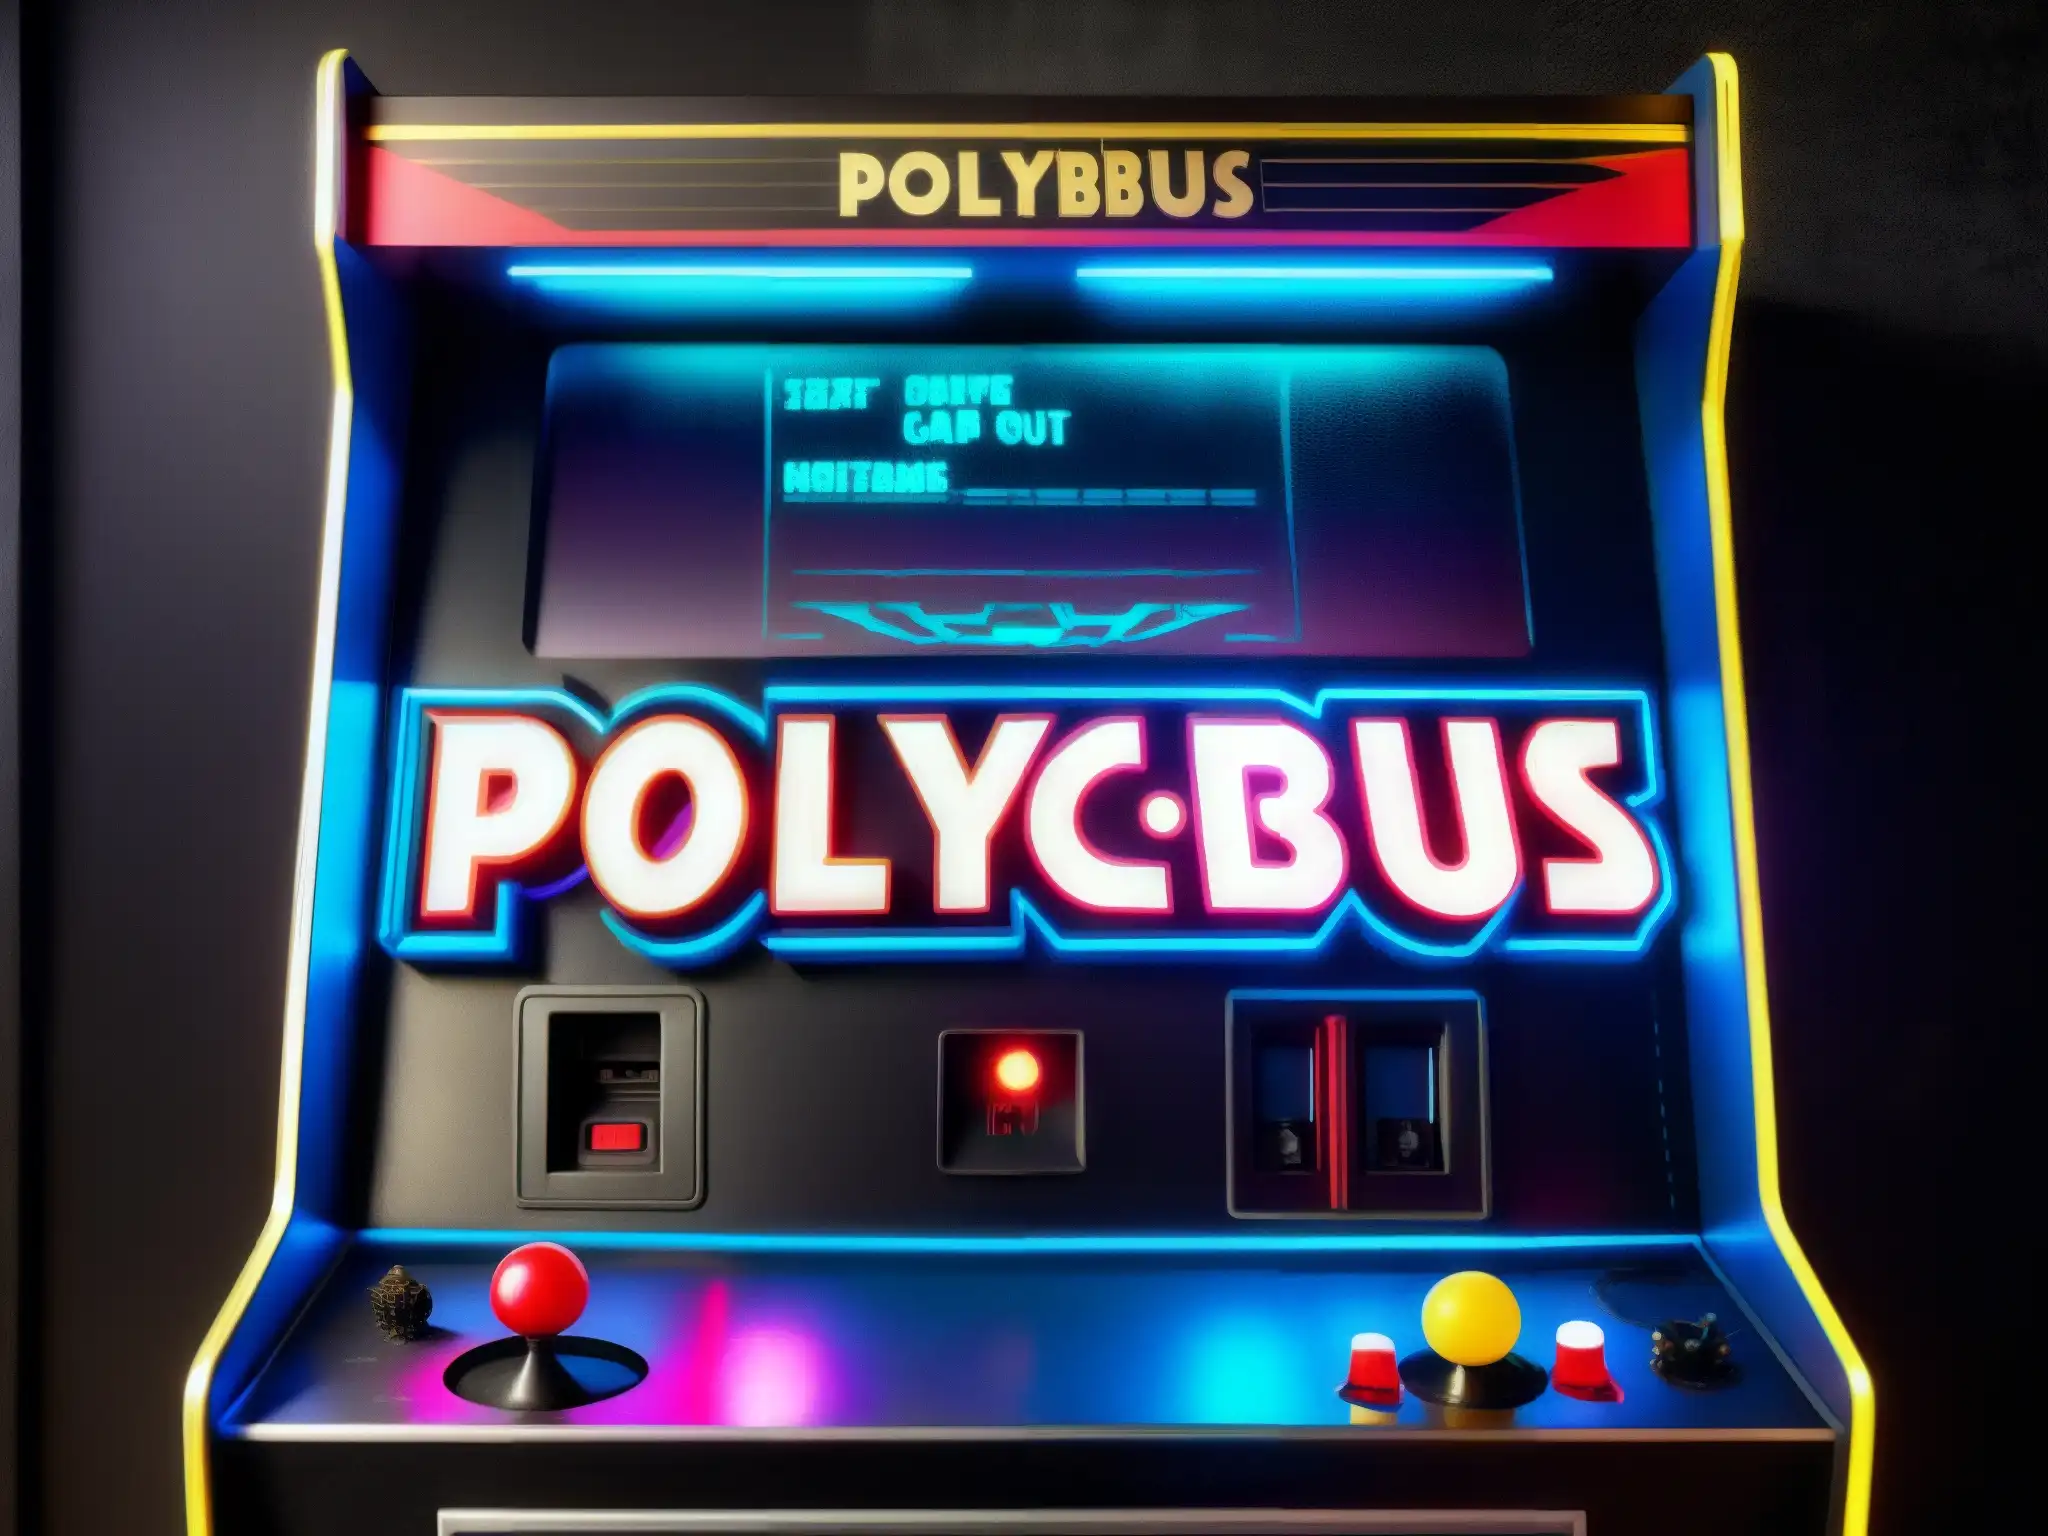 Un gabinete de arcade vintage cubierto de polvo y telarañas, con el título 'Polybius' apenas visible